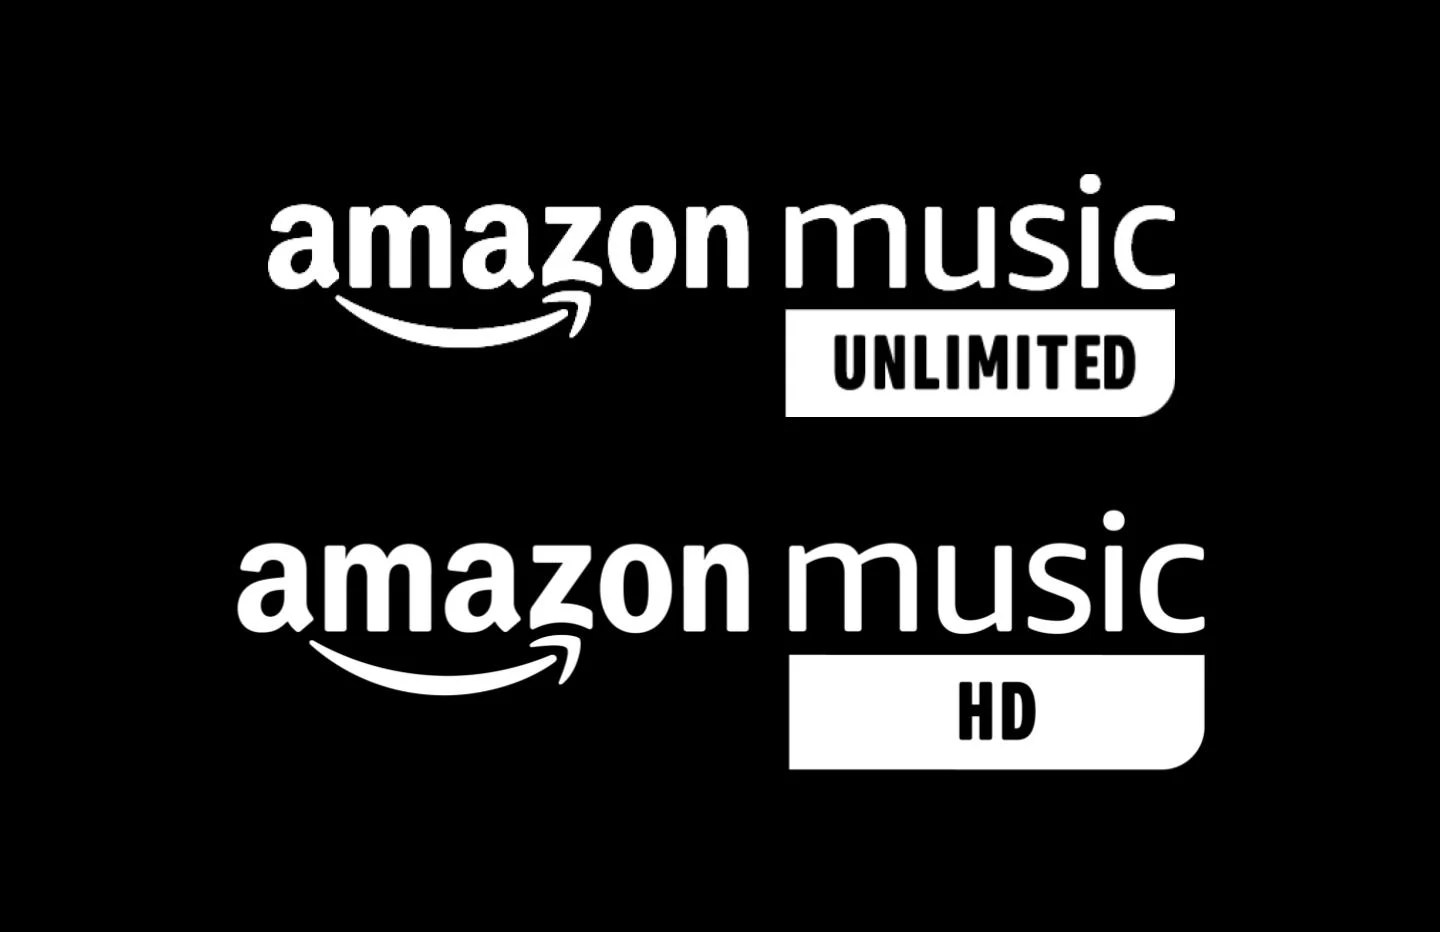 Amazon propose 3 mois offerts pour ses deux services de streaming musical